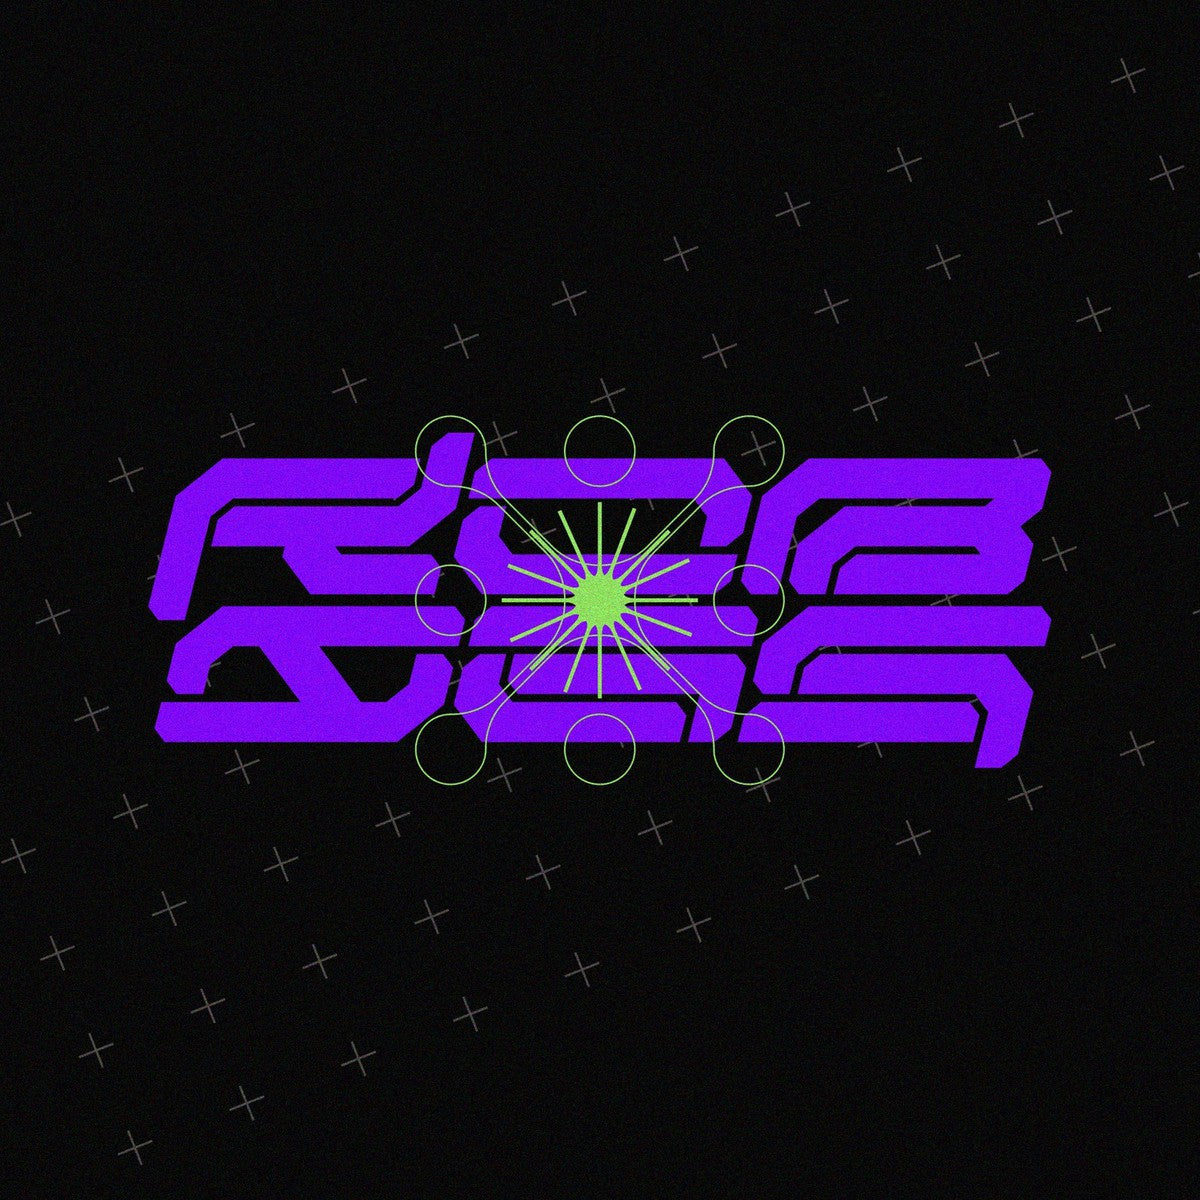 NCL BROESQ - Cyberpunk Futuristic Font